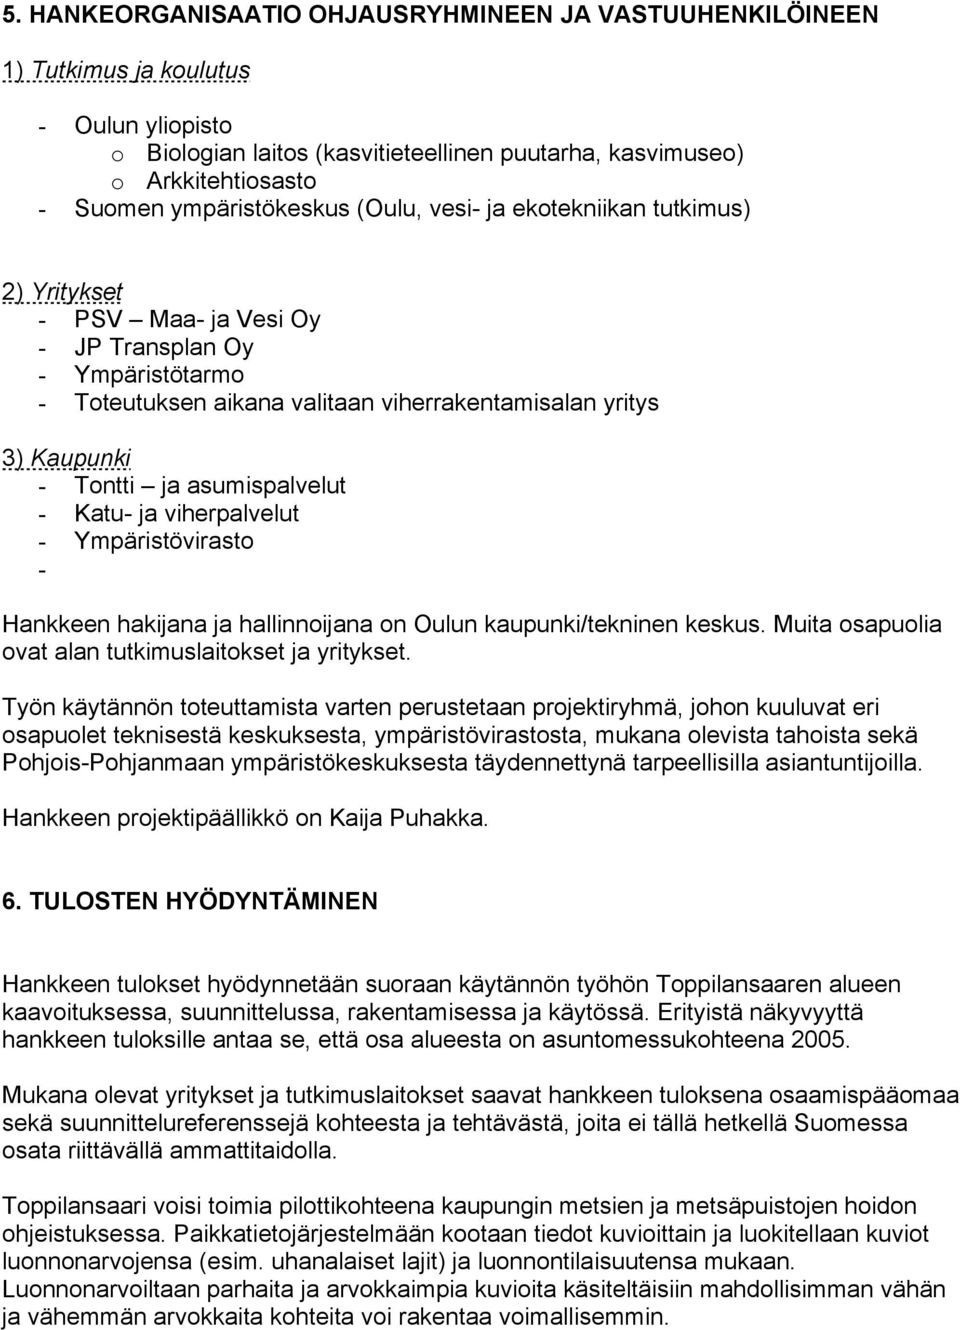 Tontti ja asumispalvelut - Katu- ja viherpalvelut - Ympäristövirasto - Hankkeen hakijana ja hallinnoijana on Oulun kaupunki/tekninen keskus. Muita osapuolia ovat alan tutkimuslaitokset ja yritykset.